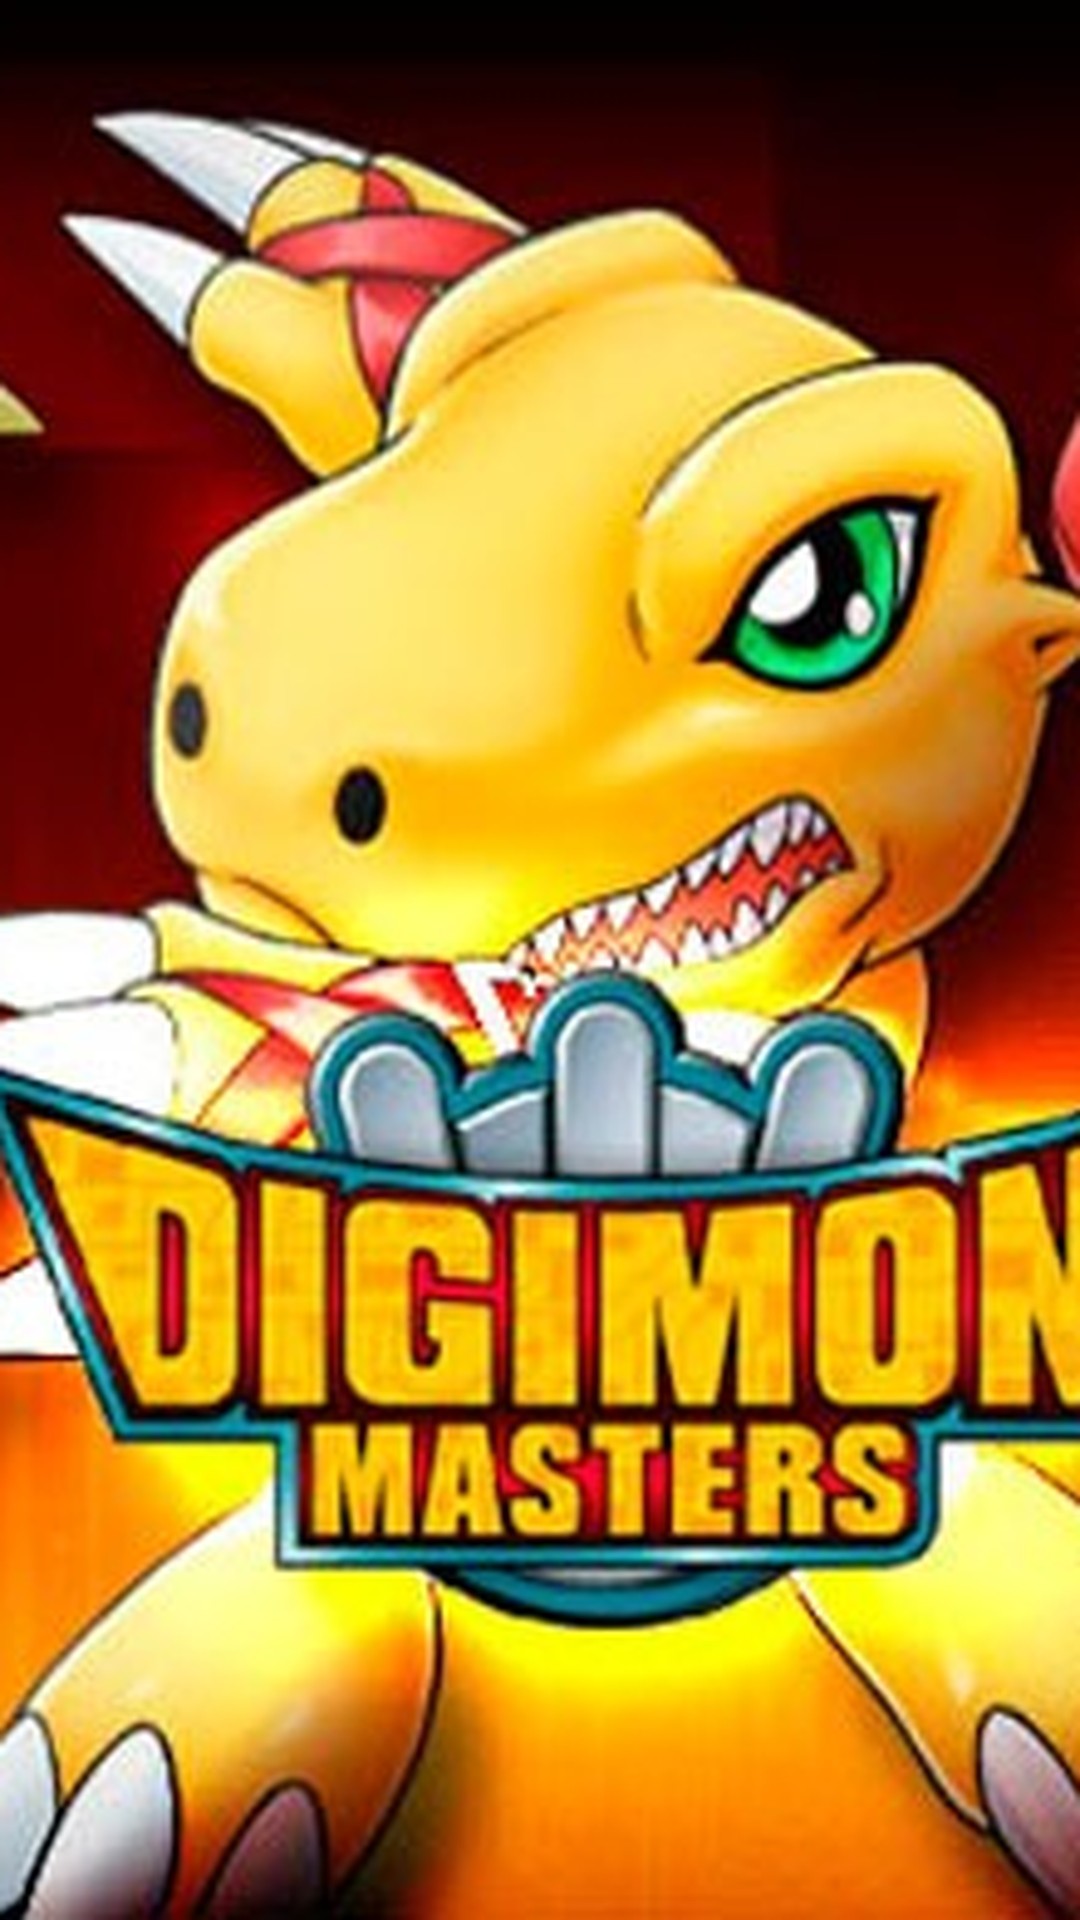 Digimon Masters Online: veja dicas para mandar bem no MMORPG da série